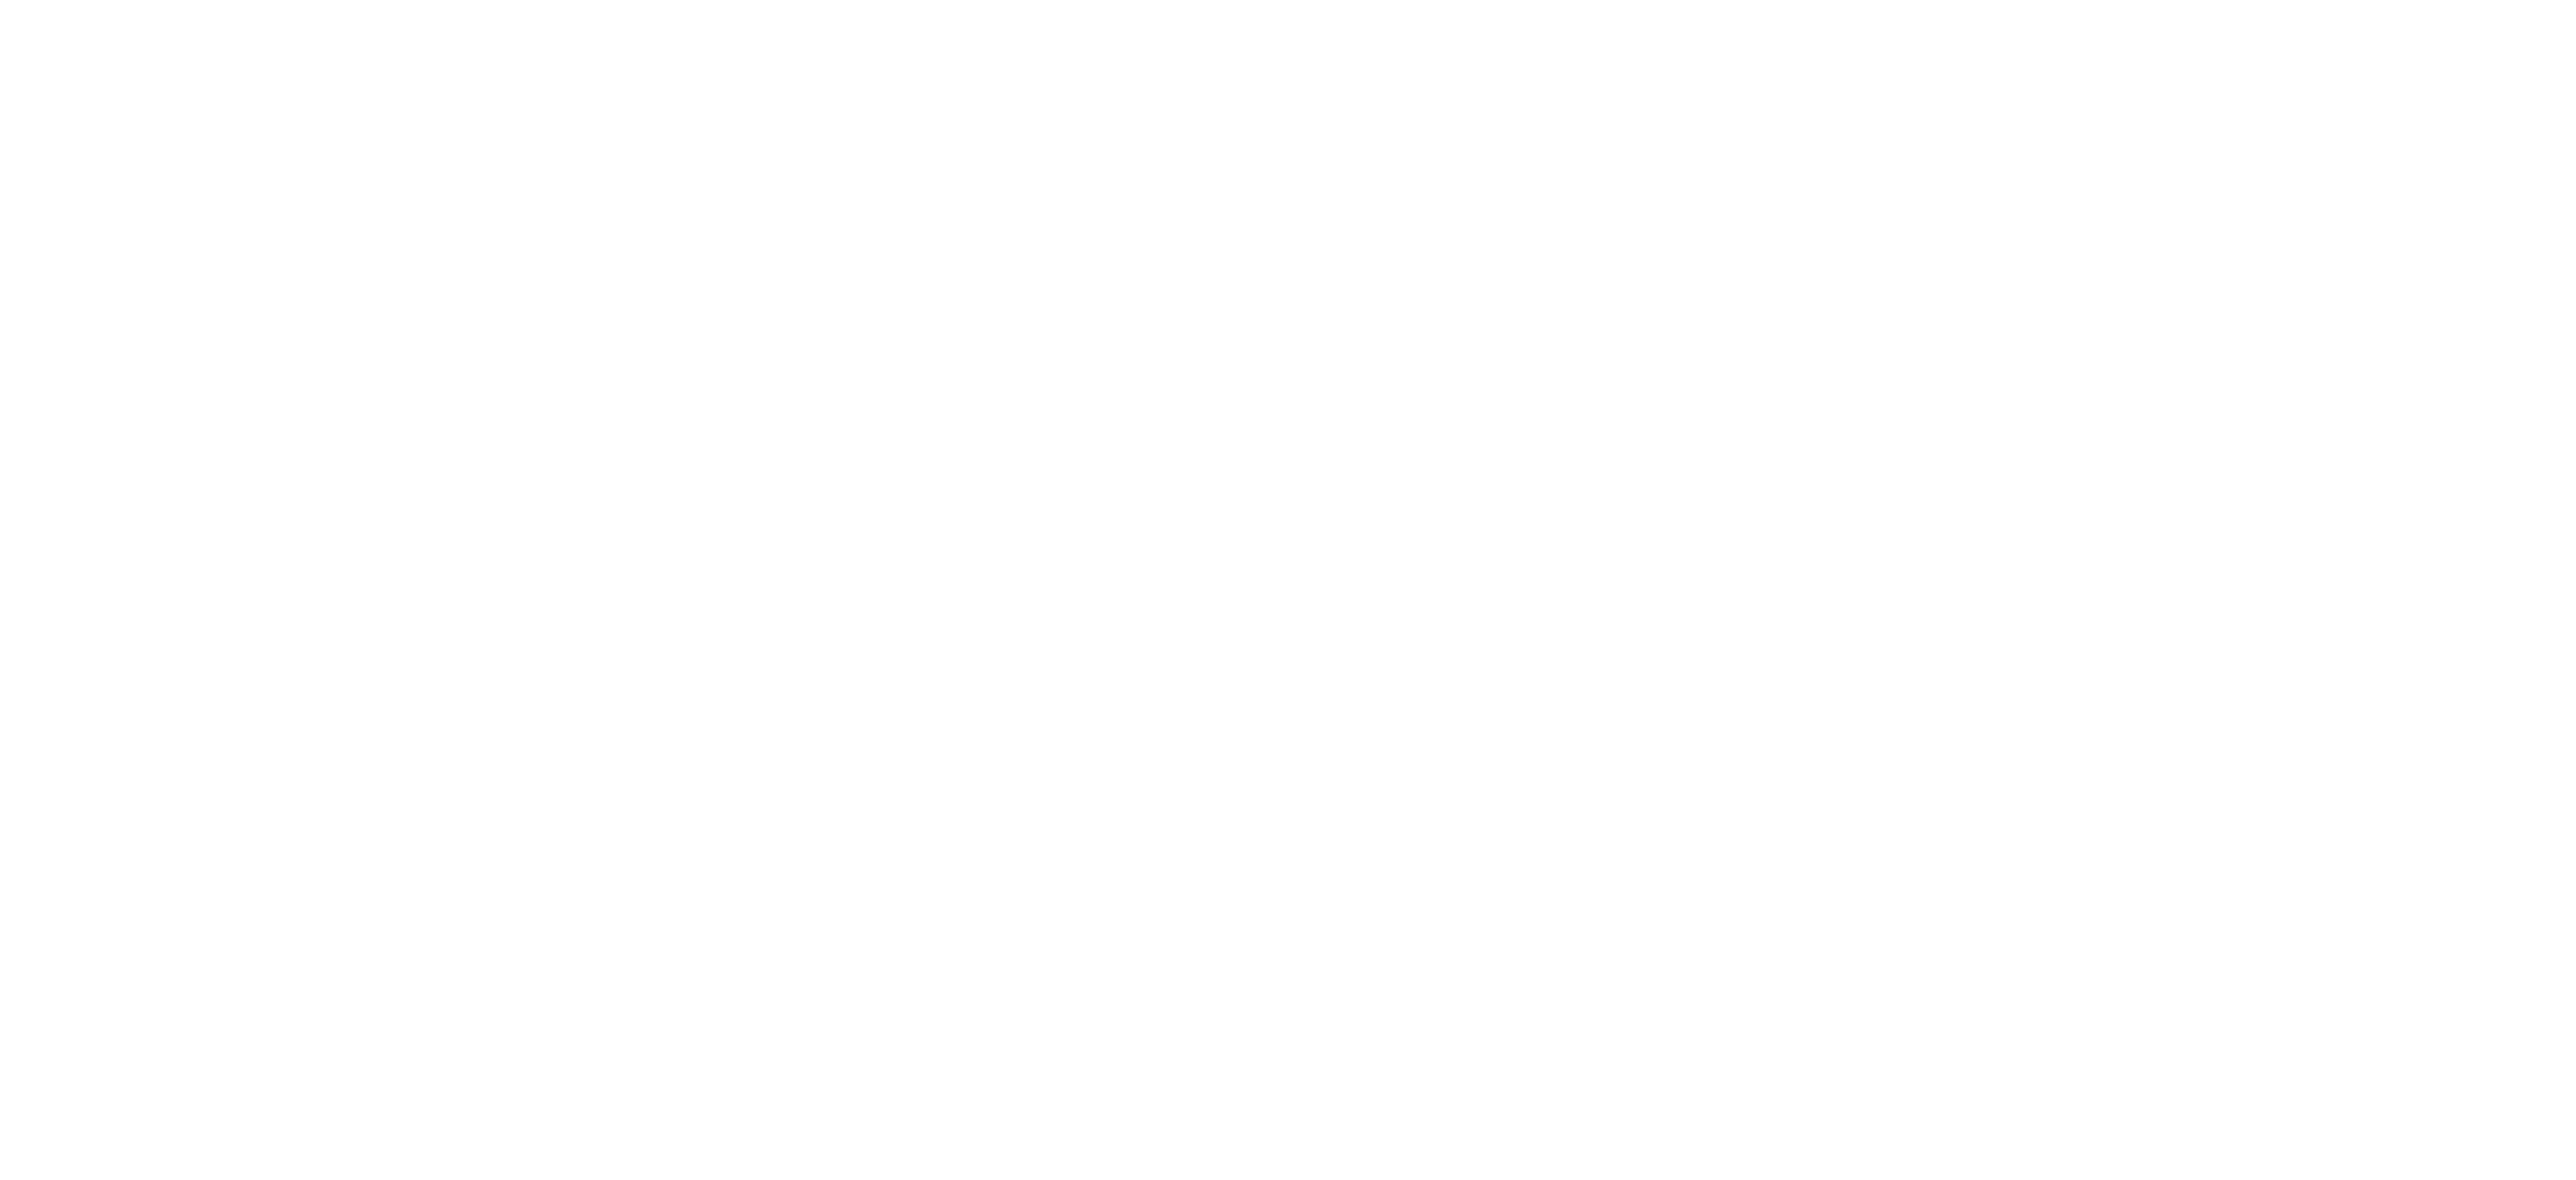 Bezos Earth Fund logo